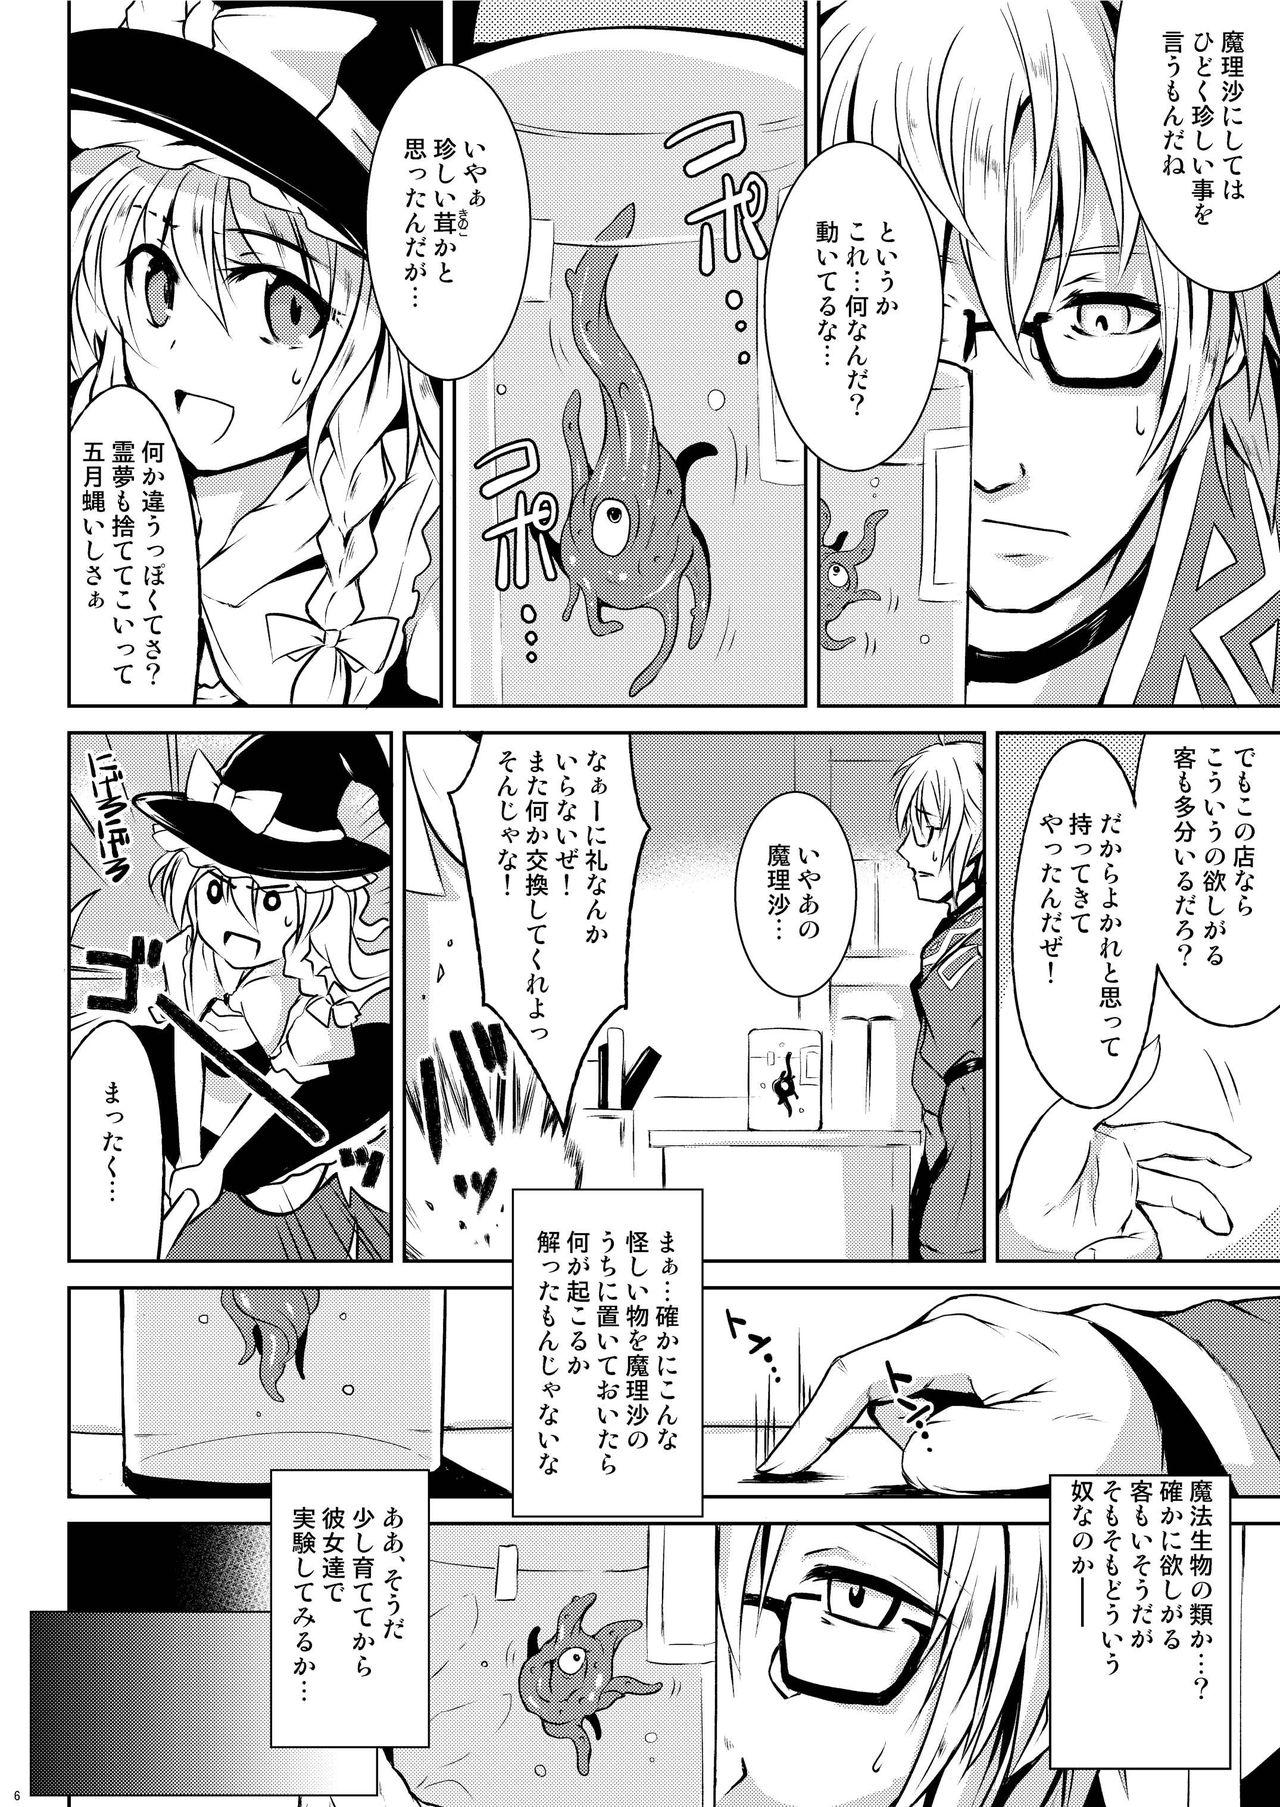 Tites (Reitaisai 13) [MegaSoundOrchestra (Sanwaribiki)] Gensou Enkou ~Scarlet~ Shoku (Touhou Project) - Touhou project Transvestite - Page 6